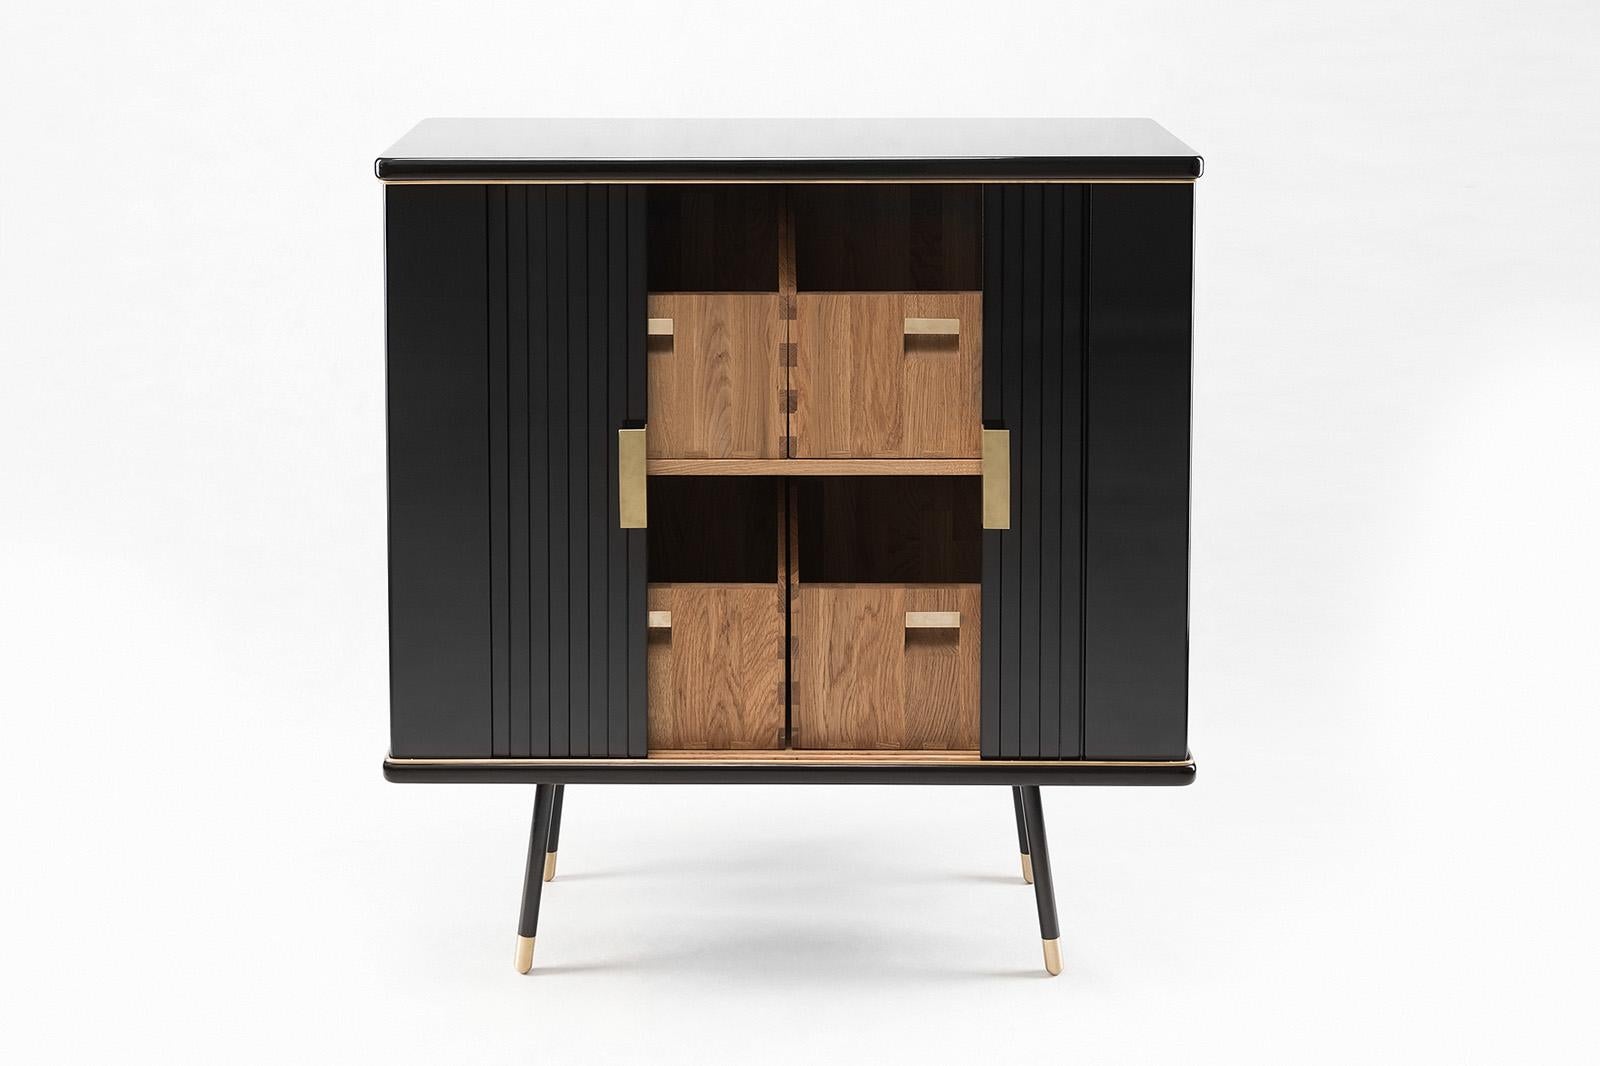 Small cabinet by Magdalena Tekieli
Dimensions: L 120 x D 40 x H 80 cm
Materials: brass, metal, oak, piano black gloss finish.

